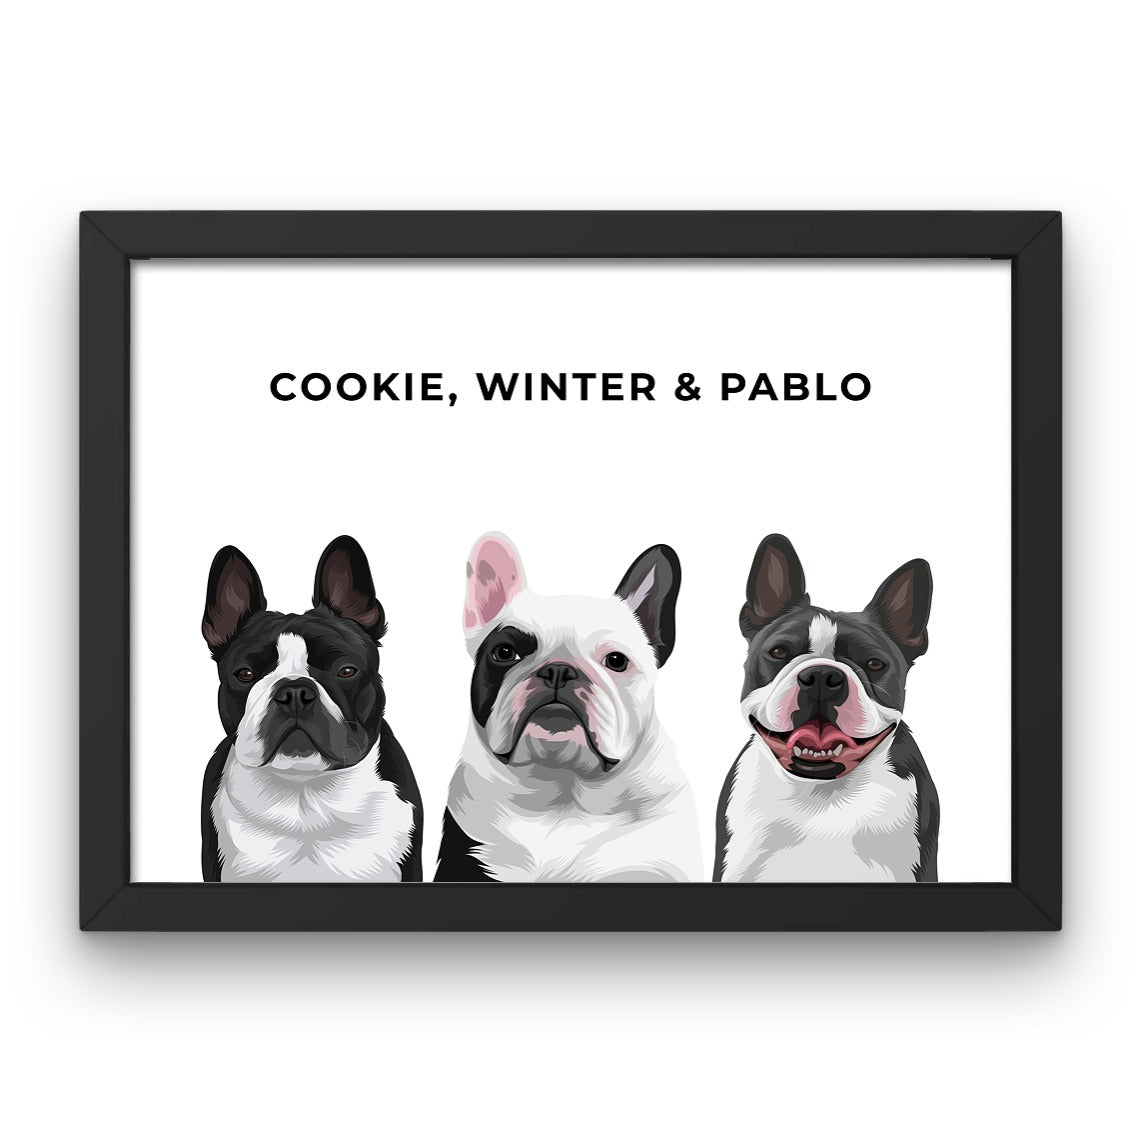 Pet Portrait - Framed Print (3 Pets)